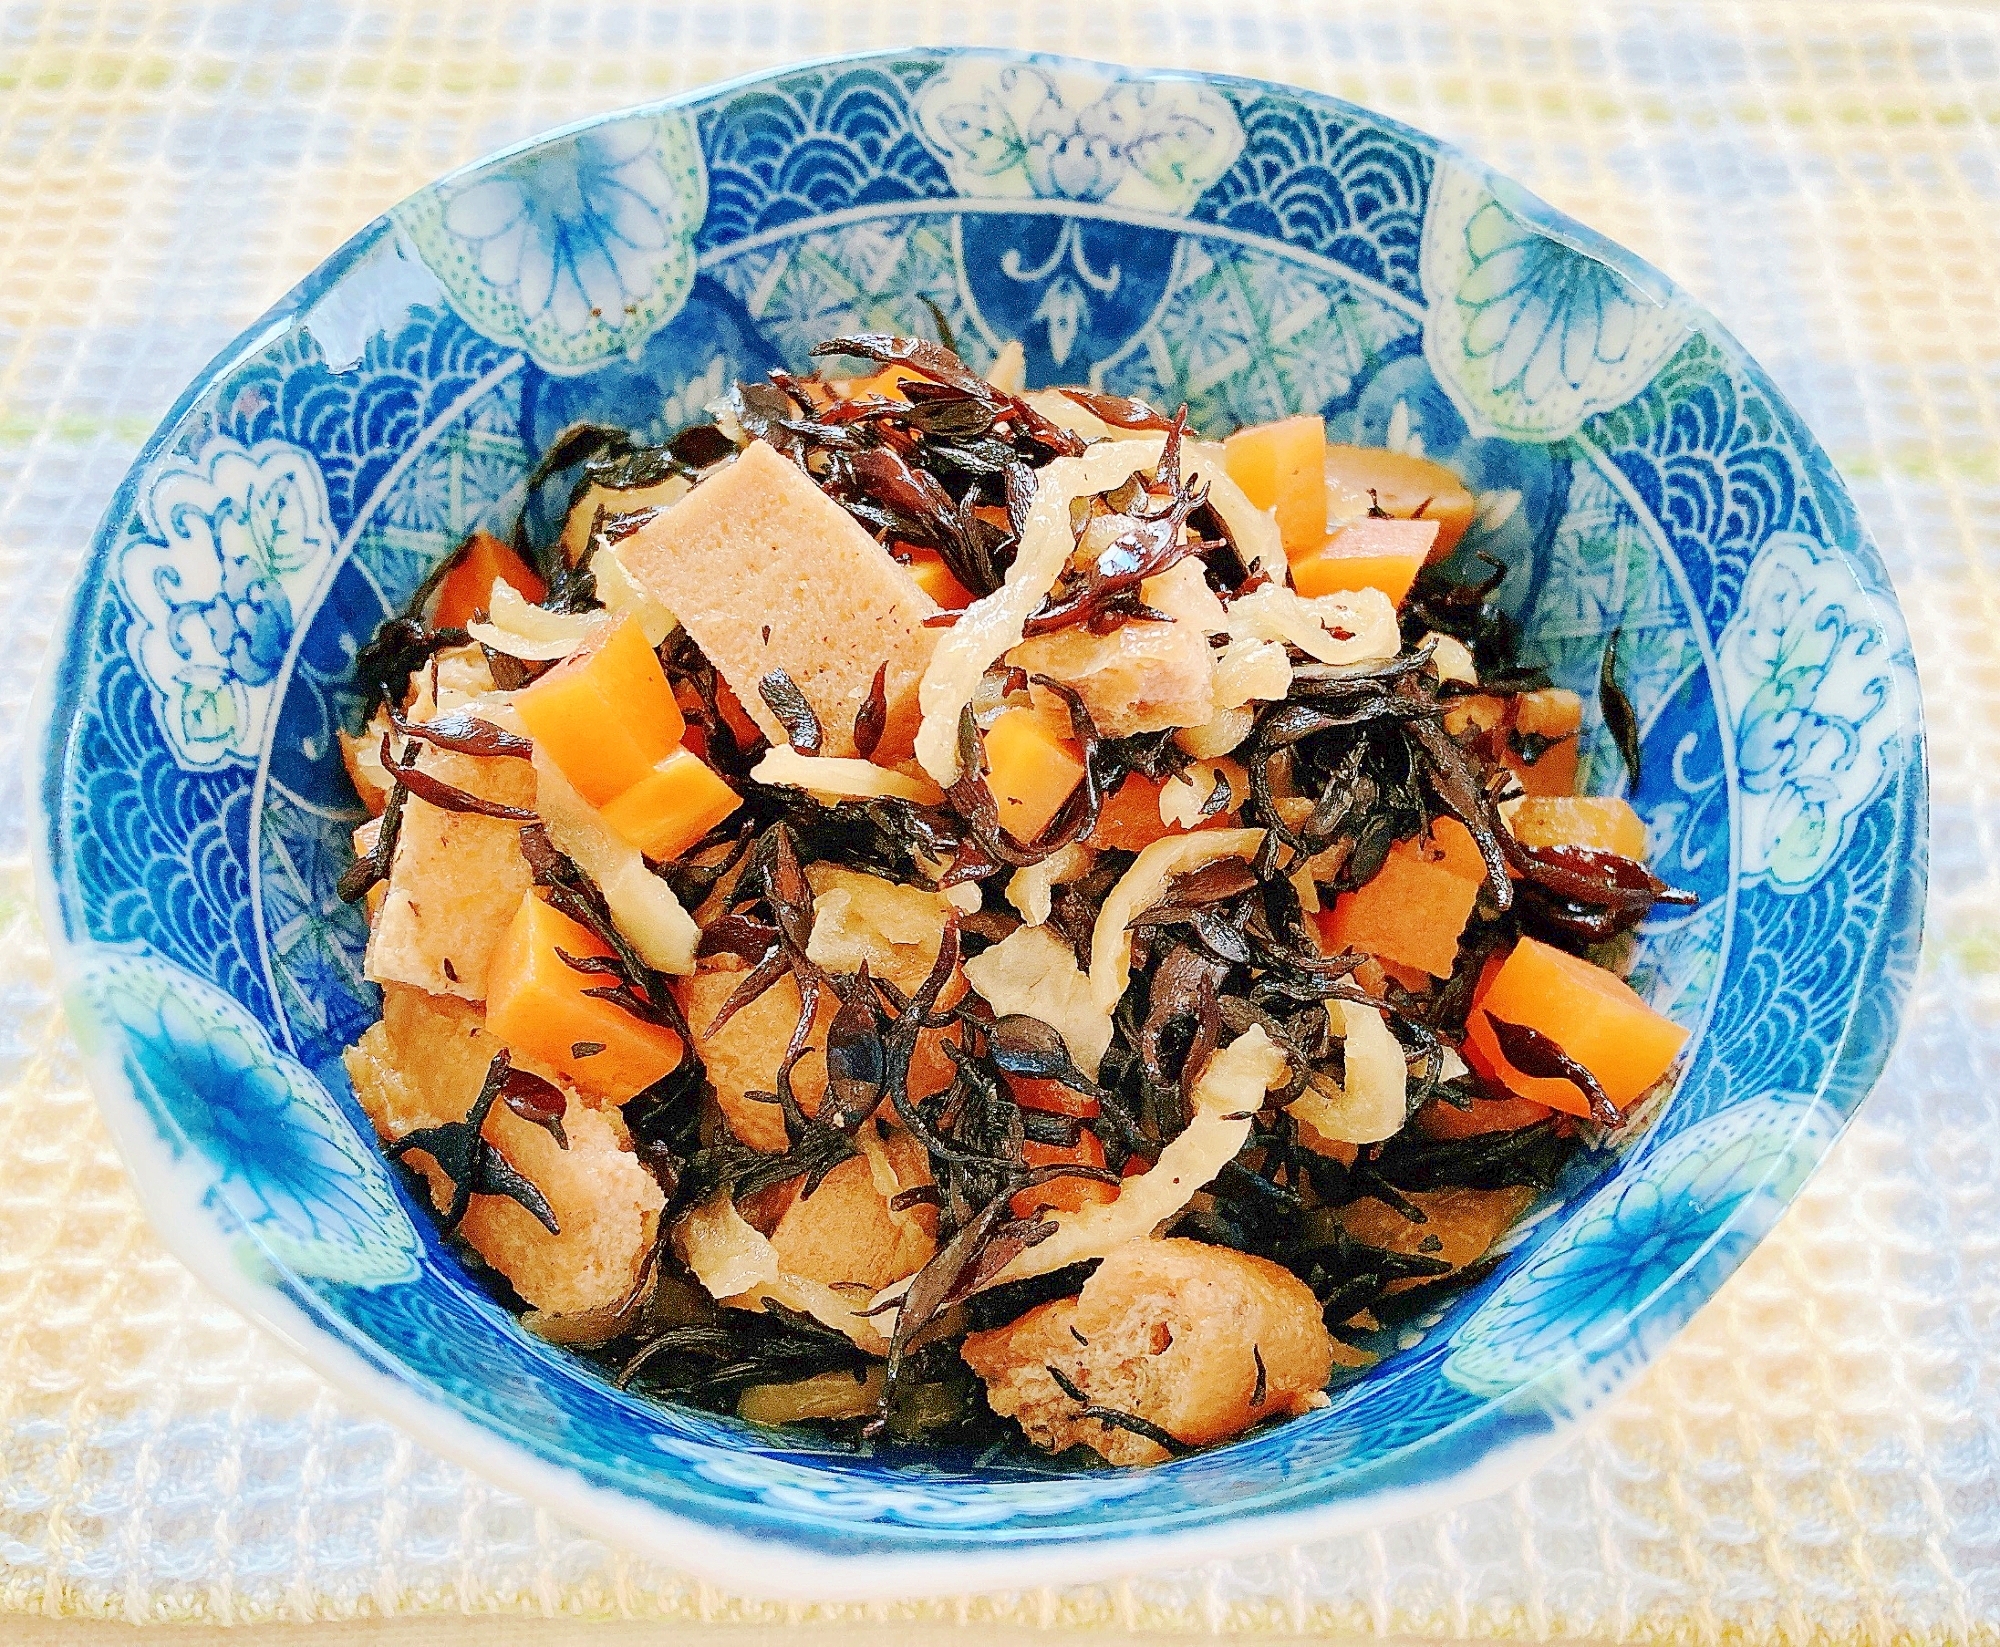 切干大根と高野豆腐のひじき煮